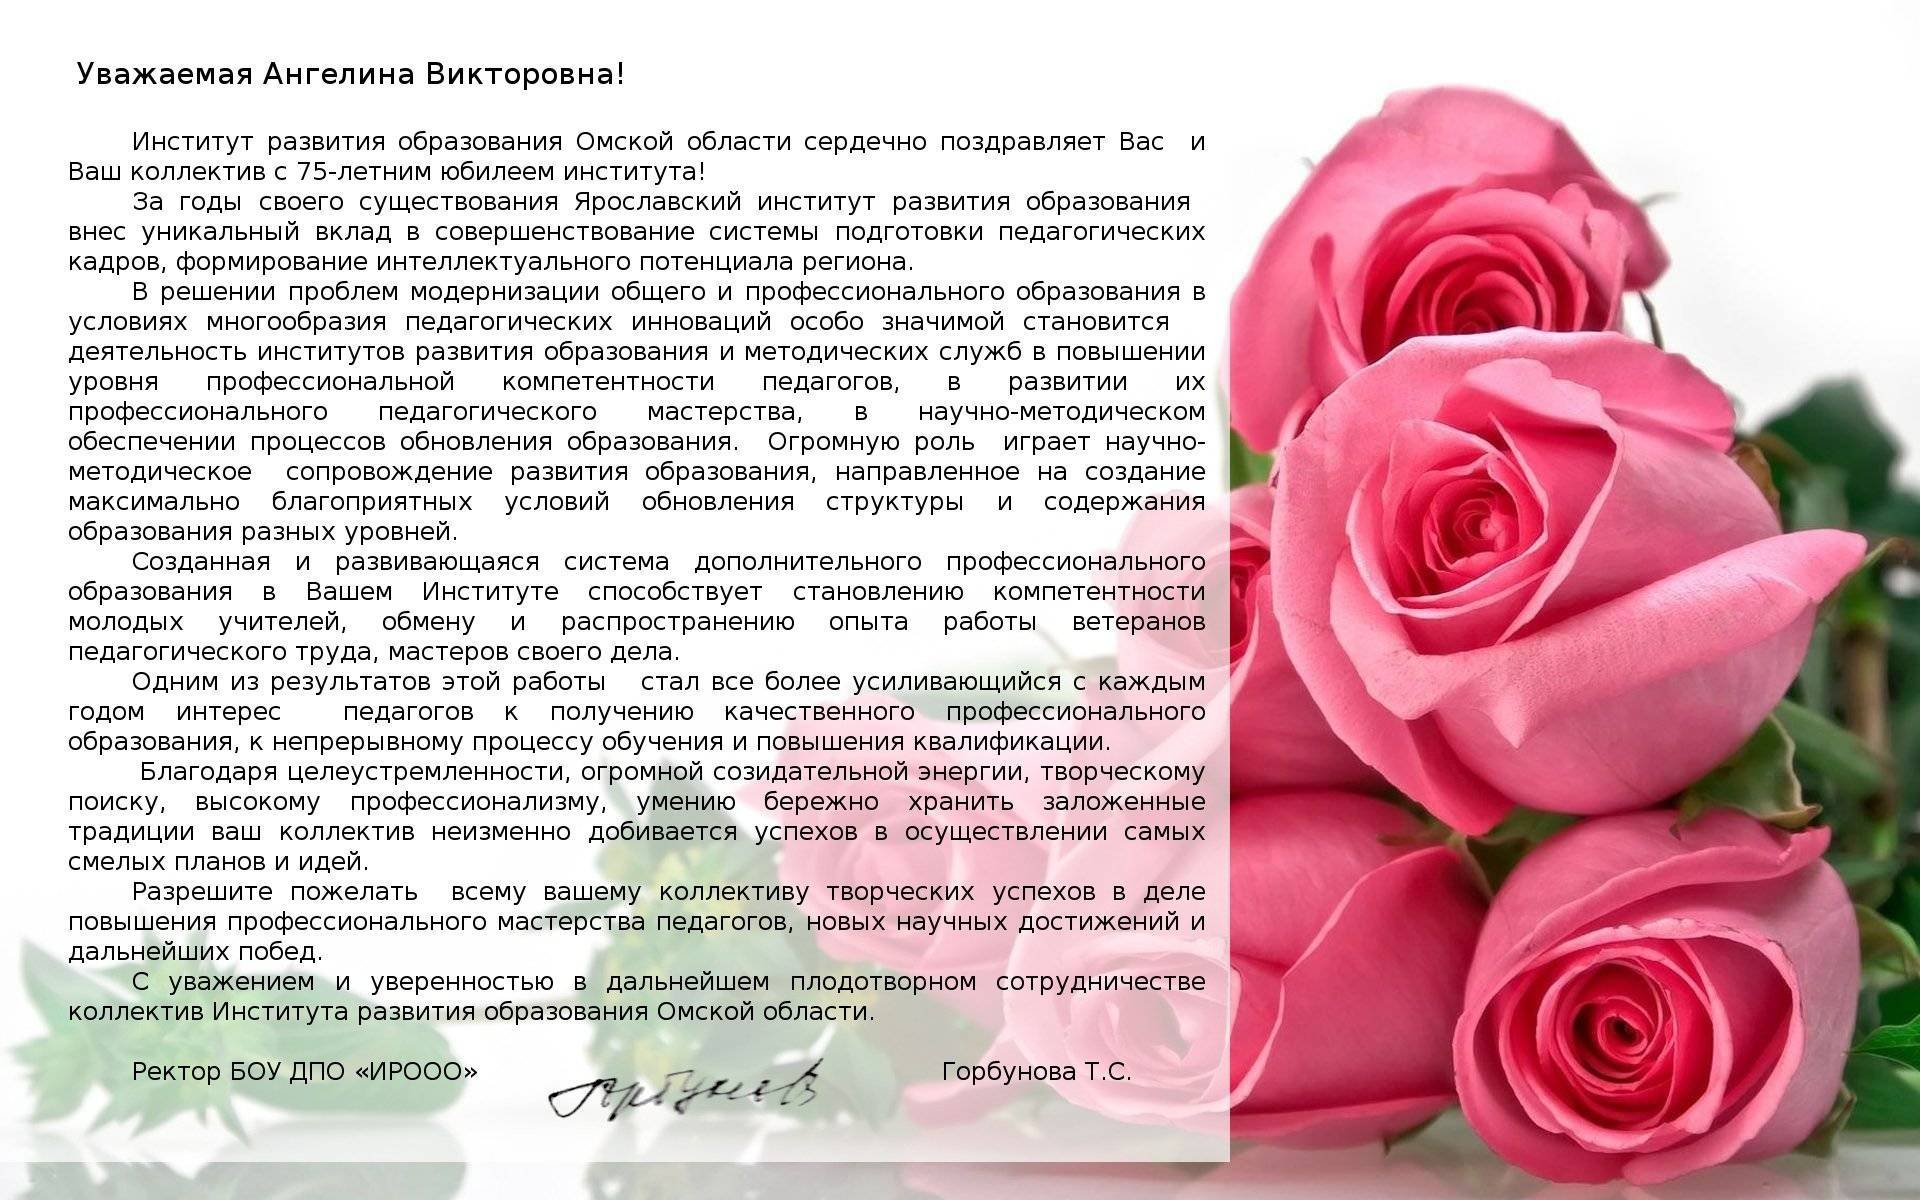 Поздравления начальнику с юбилеем от коллег kinotv